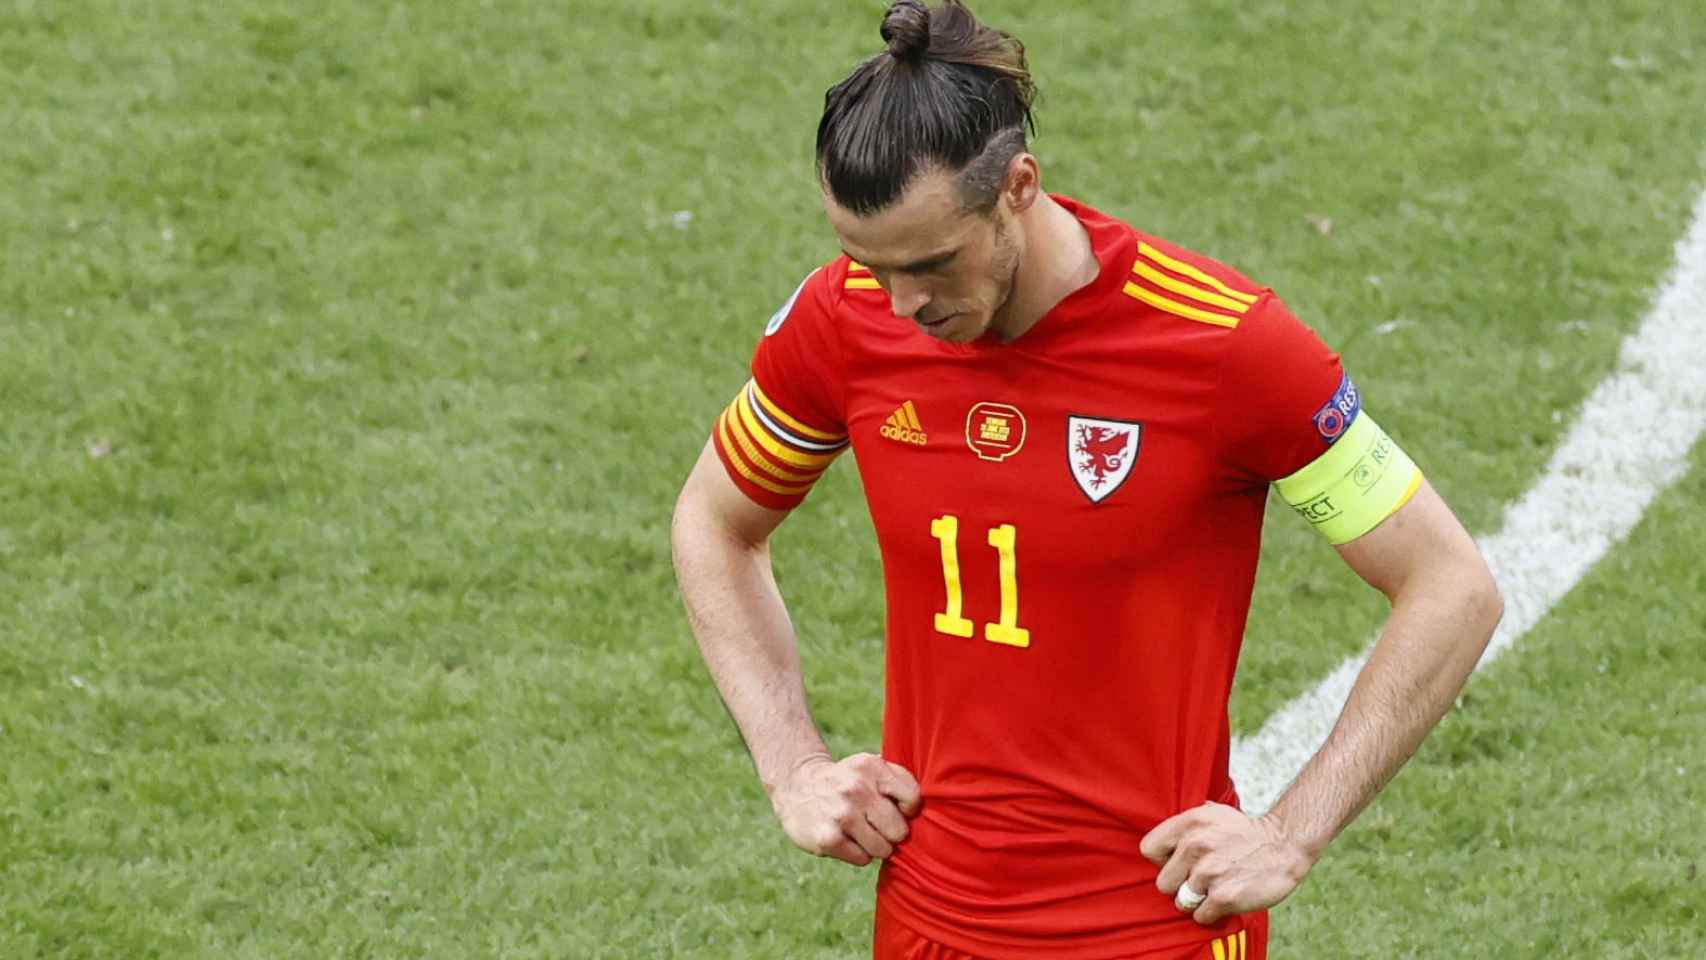 Gareth Bale, tras la eliminación de la selección de Gales de la Eurocopa 2020